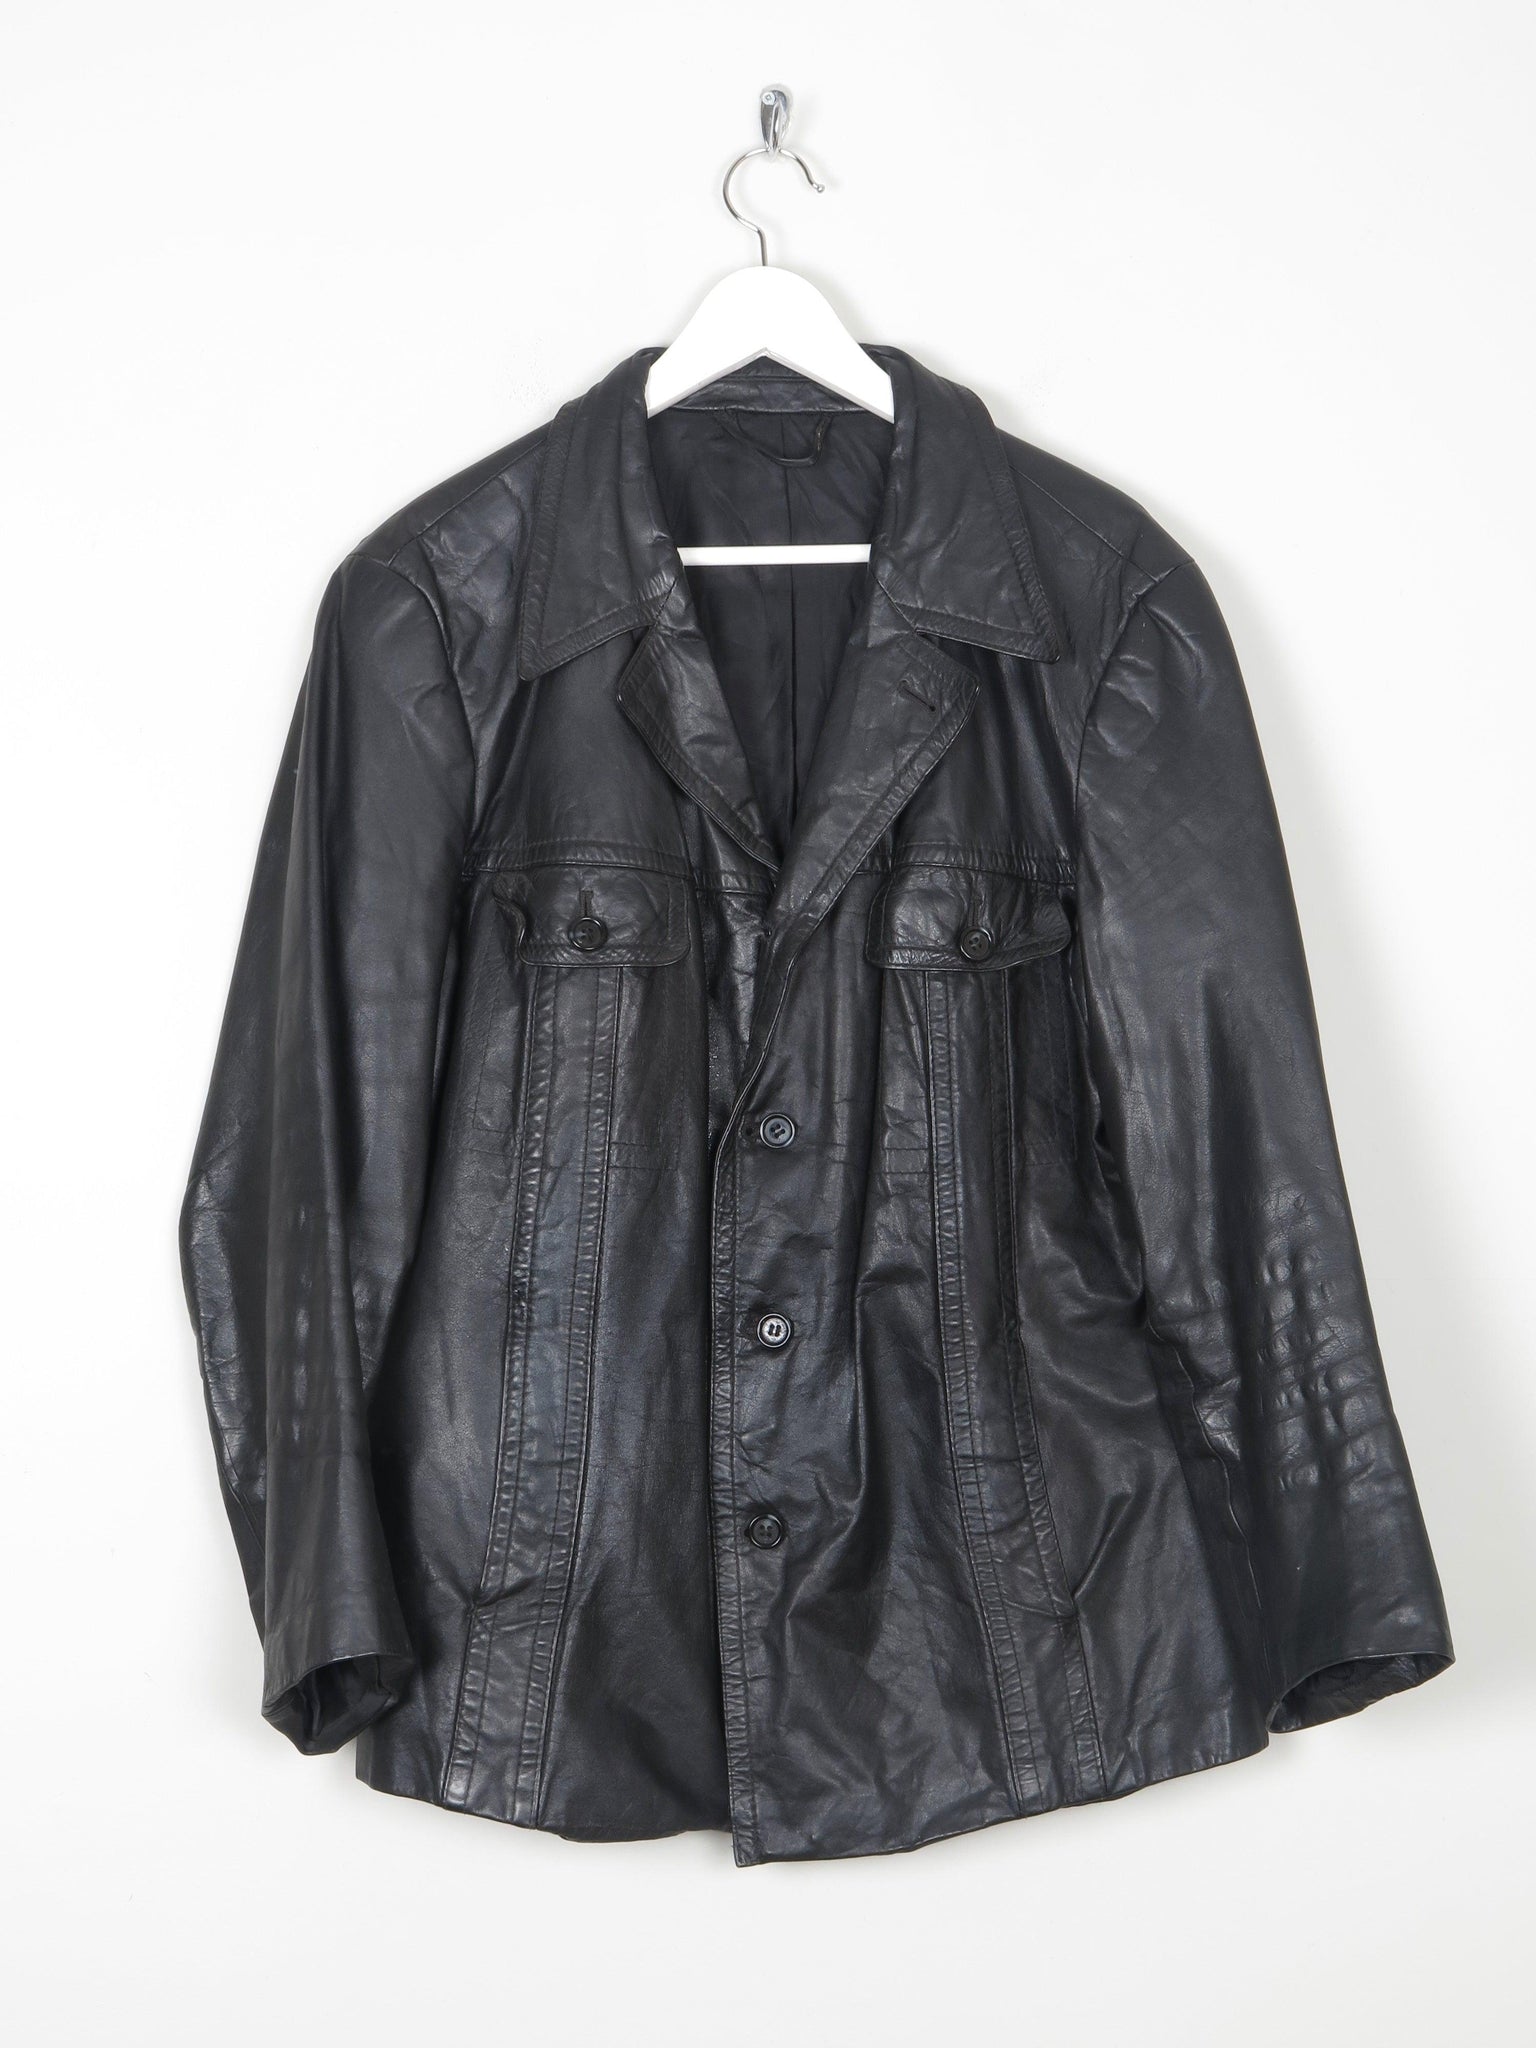 Mens  Vintage 1970s Black Leather Jacket M/L - The Harlequin